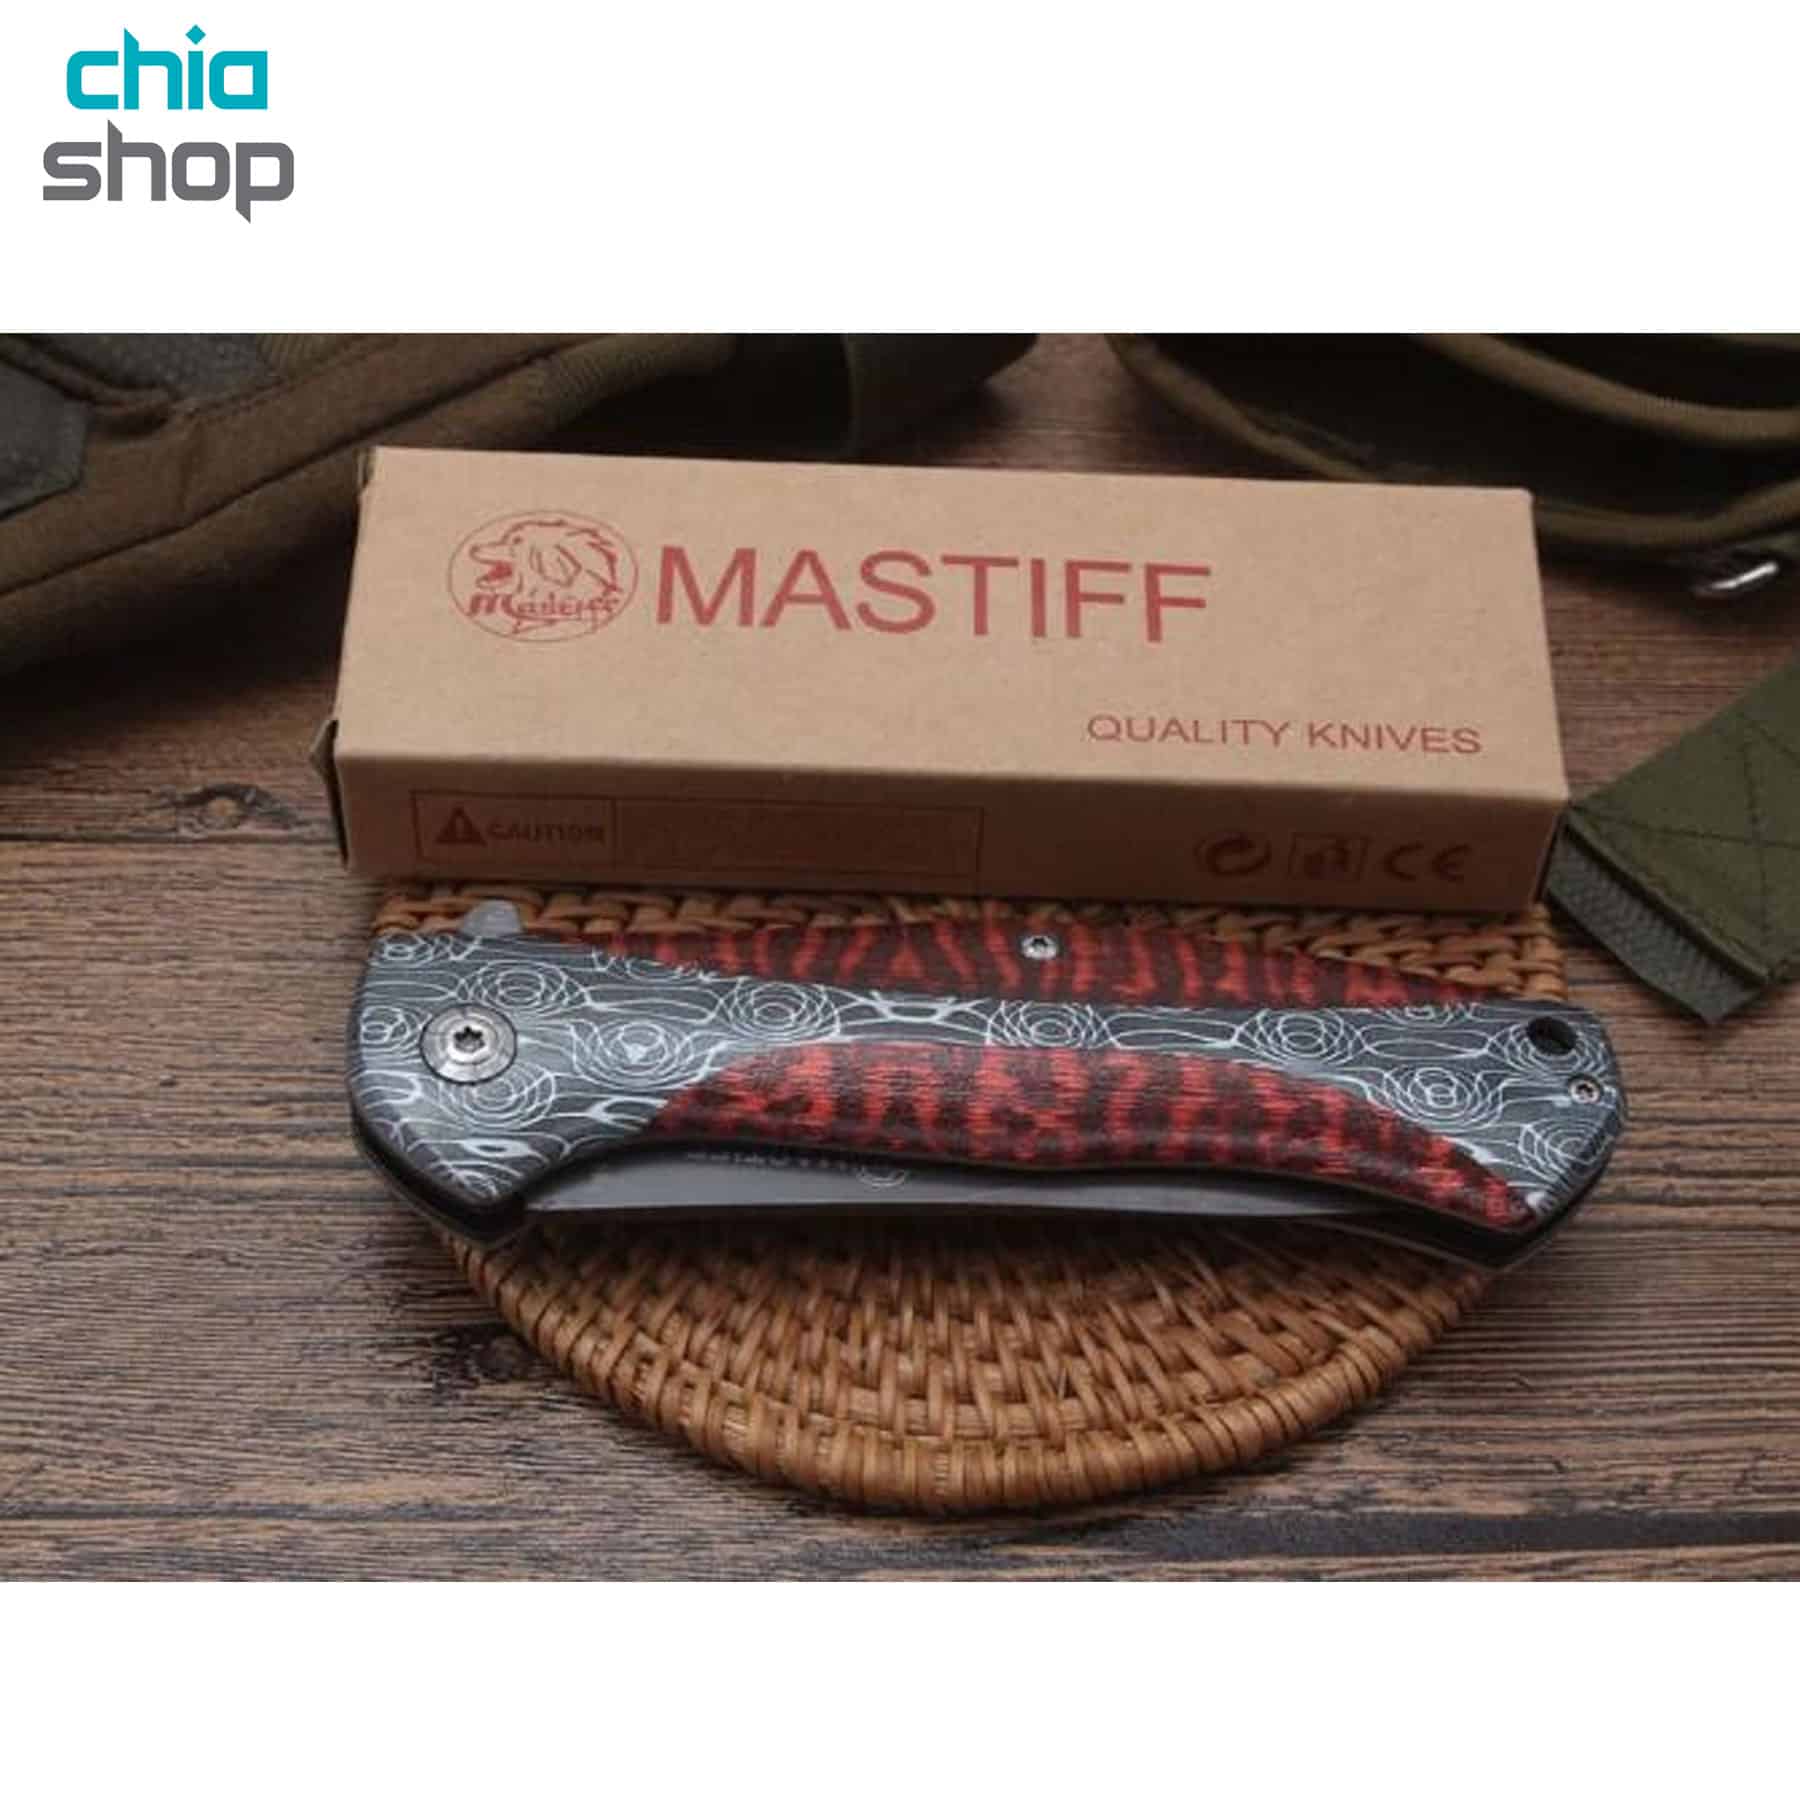 چاقو تاشو نیمه اتوماتیک ماستیف مدل Mastiff DA159